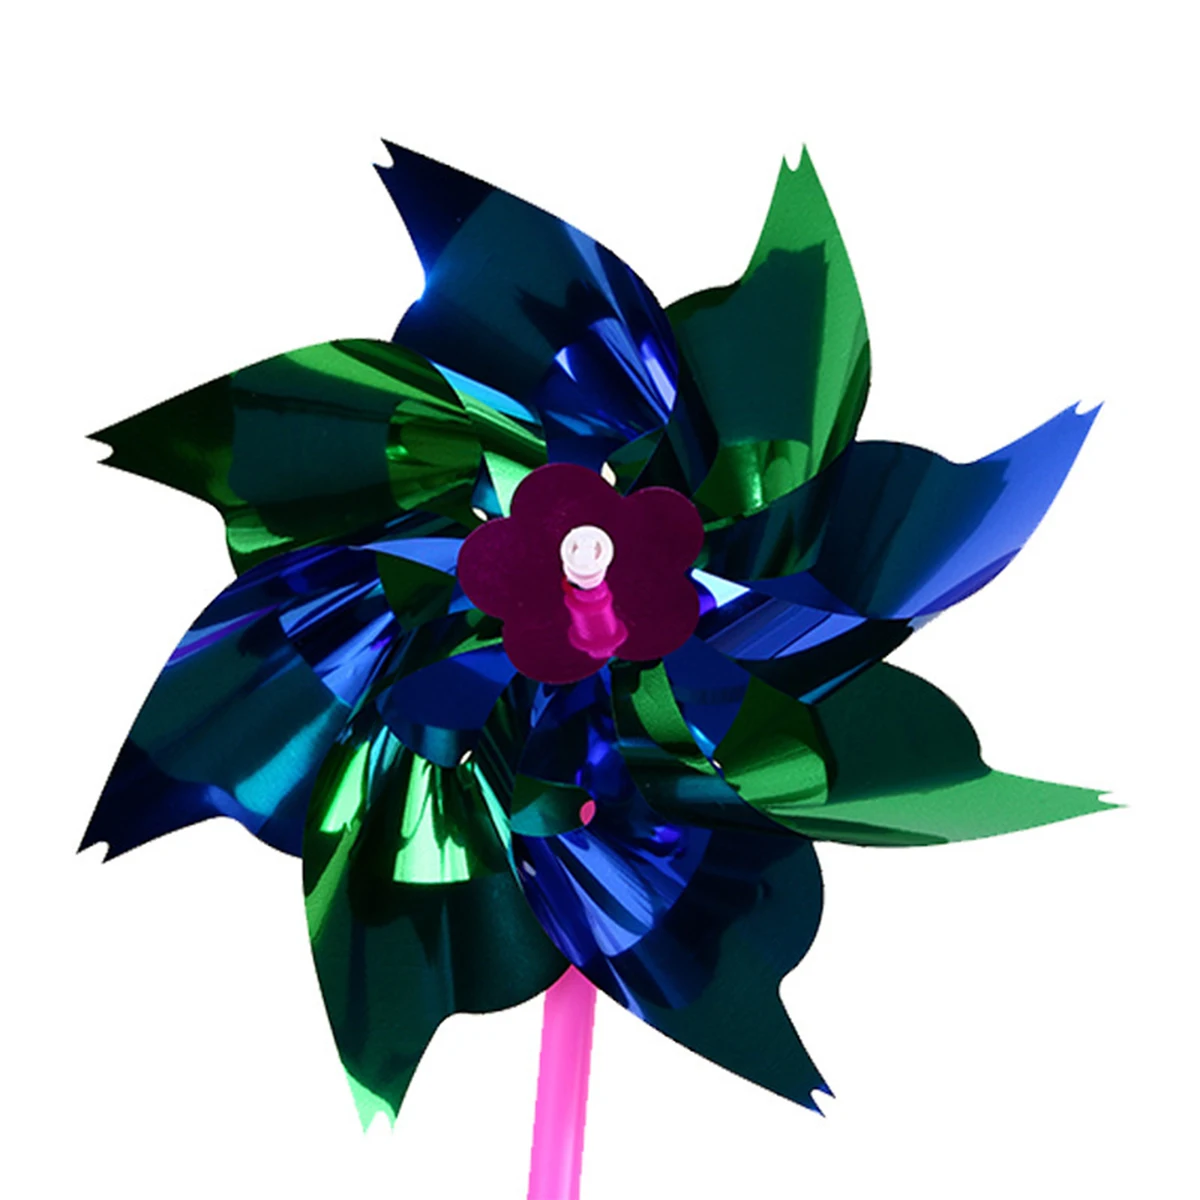 100 шт случайный цвет DIY игрушка Радужный Pinwheel вечерние Pinwheels для детей карнавал вечерние игрушки в виде ветряной мельницы